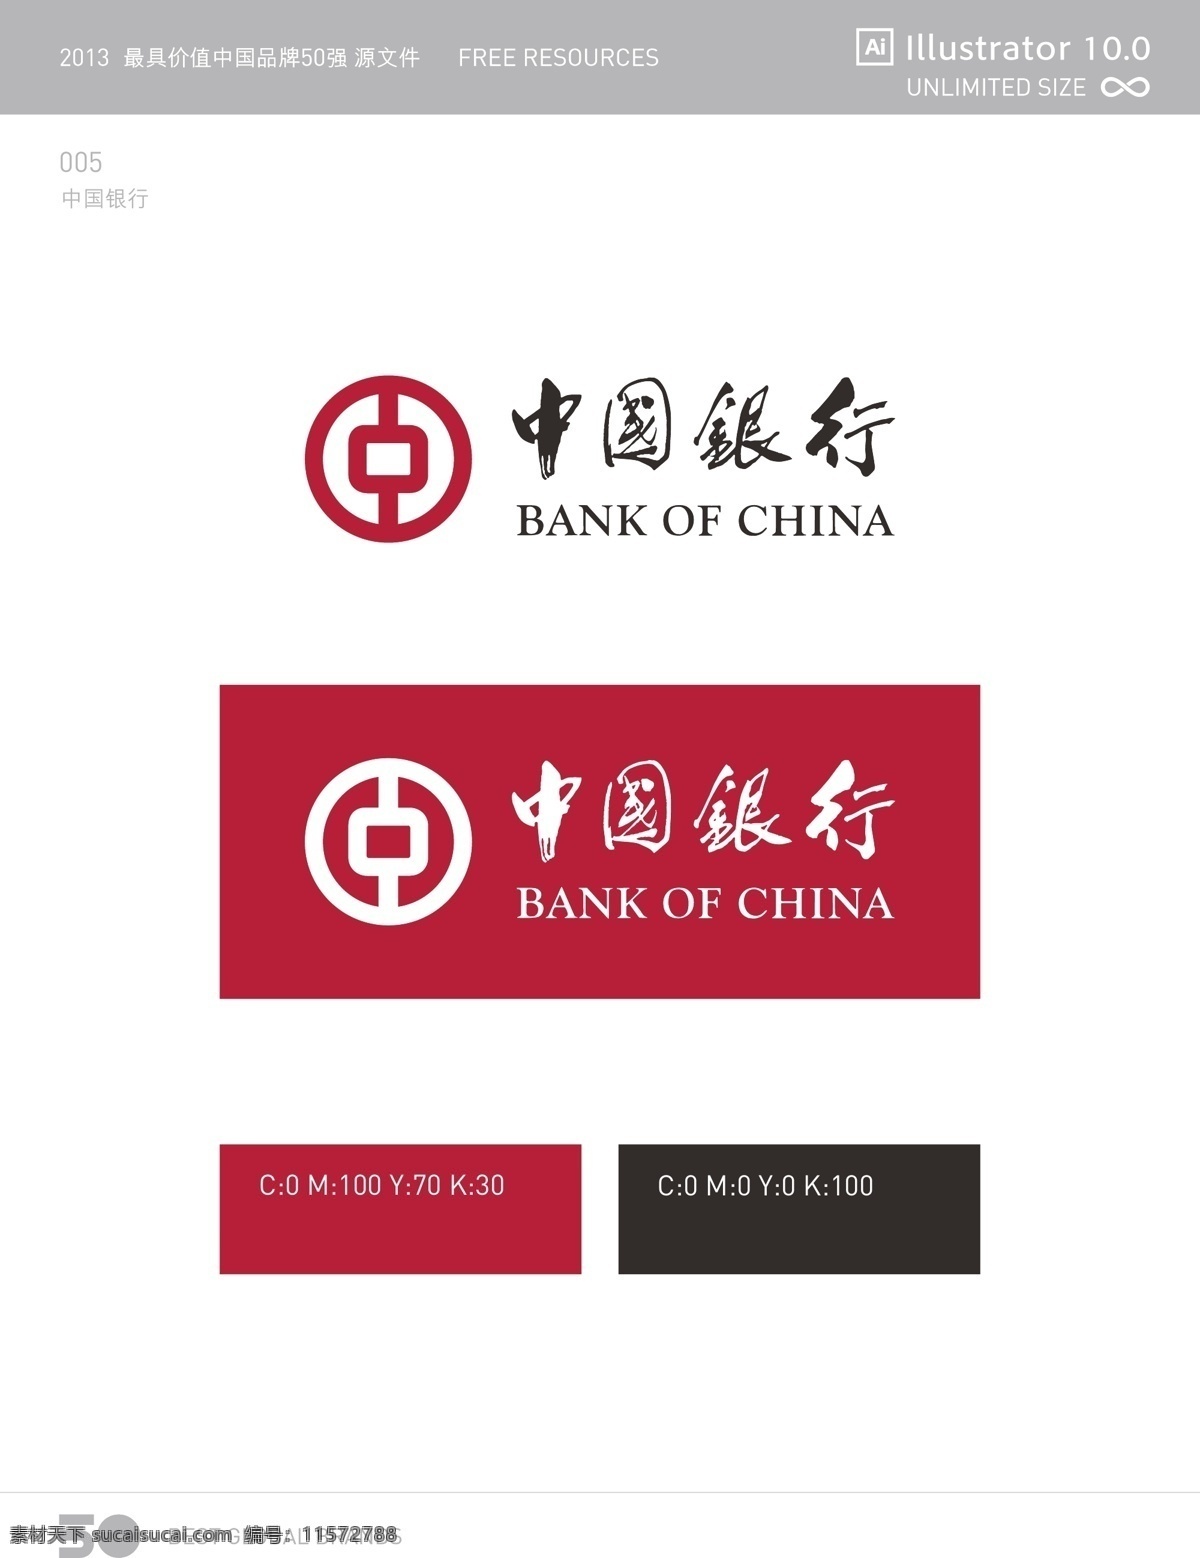 中国银行 矢量 logo 模板 logo设计 vi设计 vi系统 标志设计 品牌形象 设计稿 素材元素 银行标志 形象设计 应用系统 vi应用延展 应用规范 源文件 矢量图